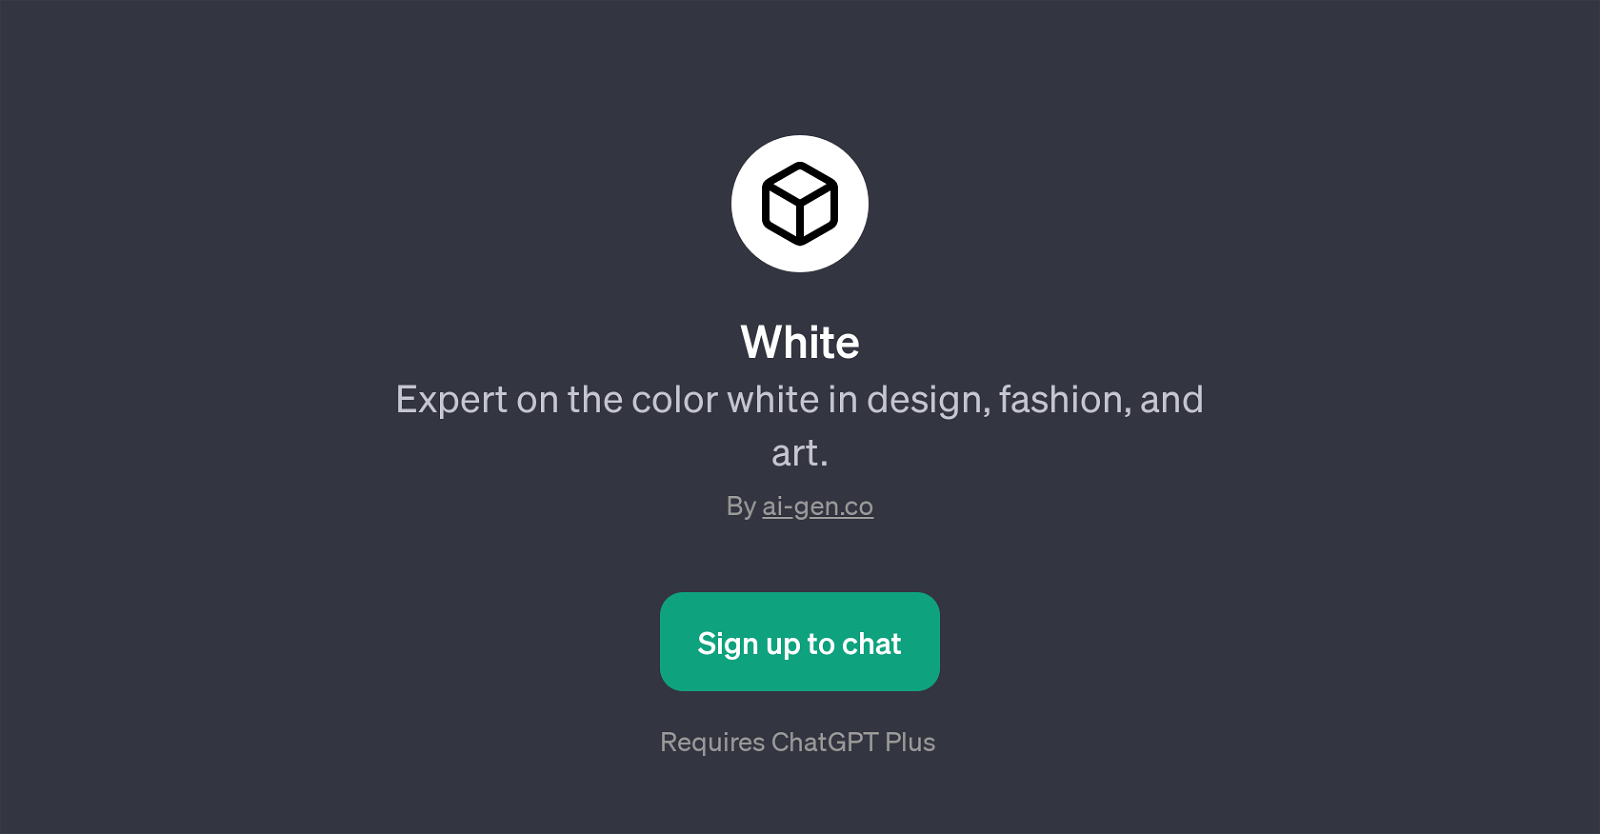 WhitePage website